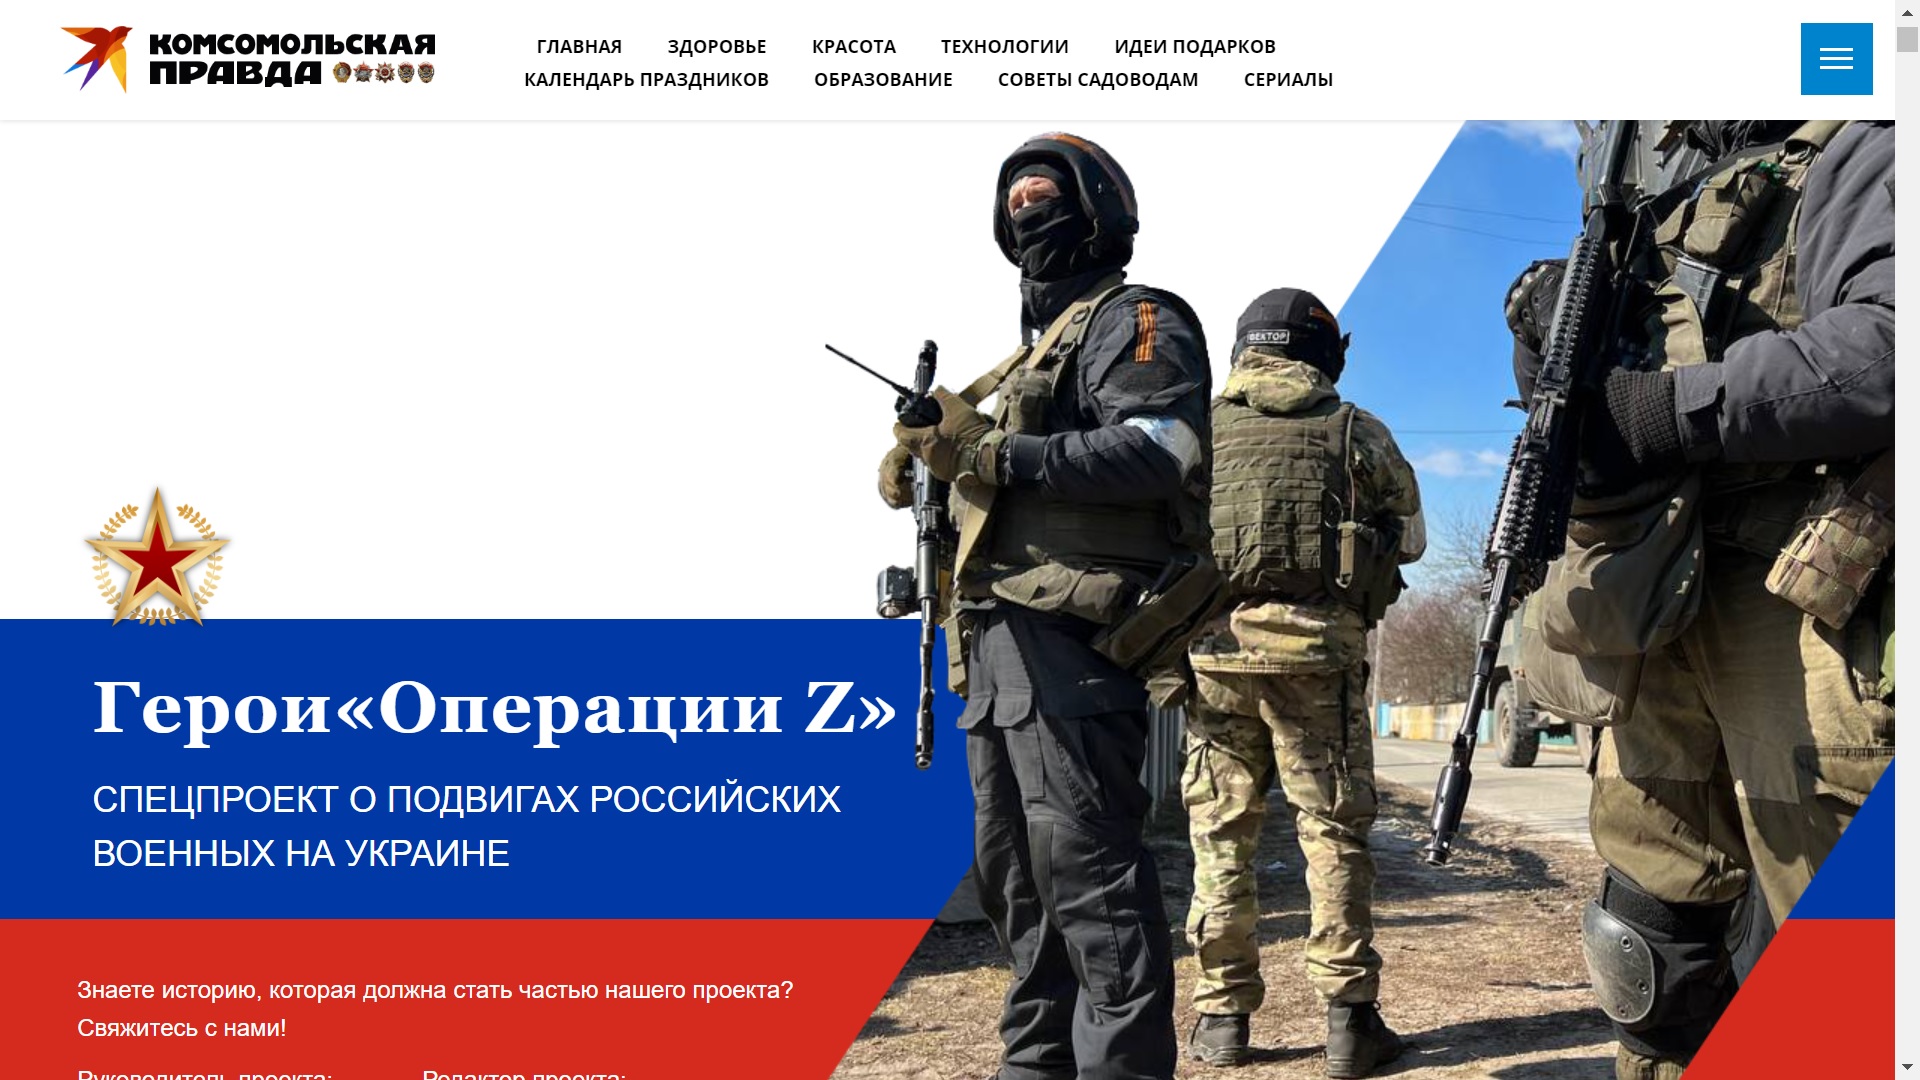 Герои «Операции Z»: спецпроект о подвигах российских военных на Украине